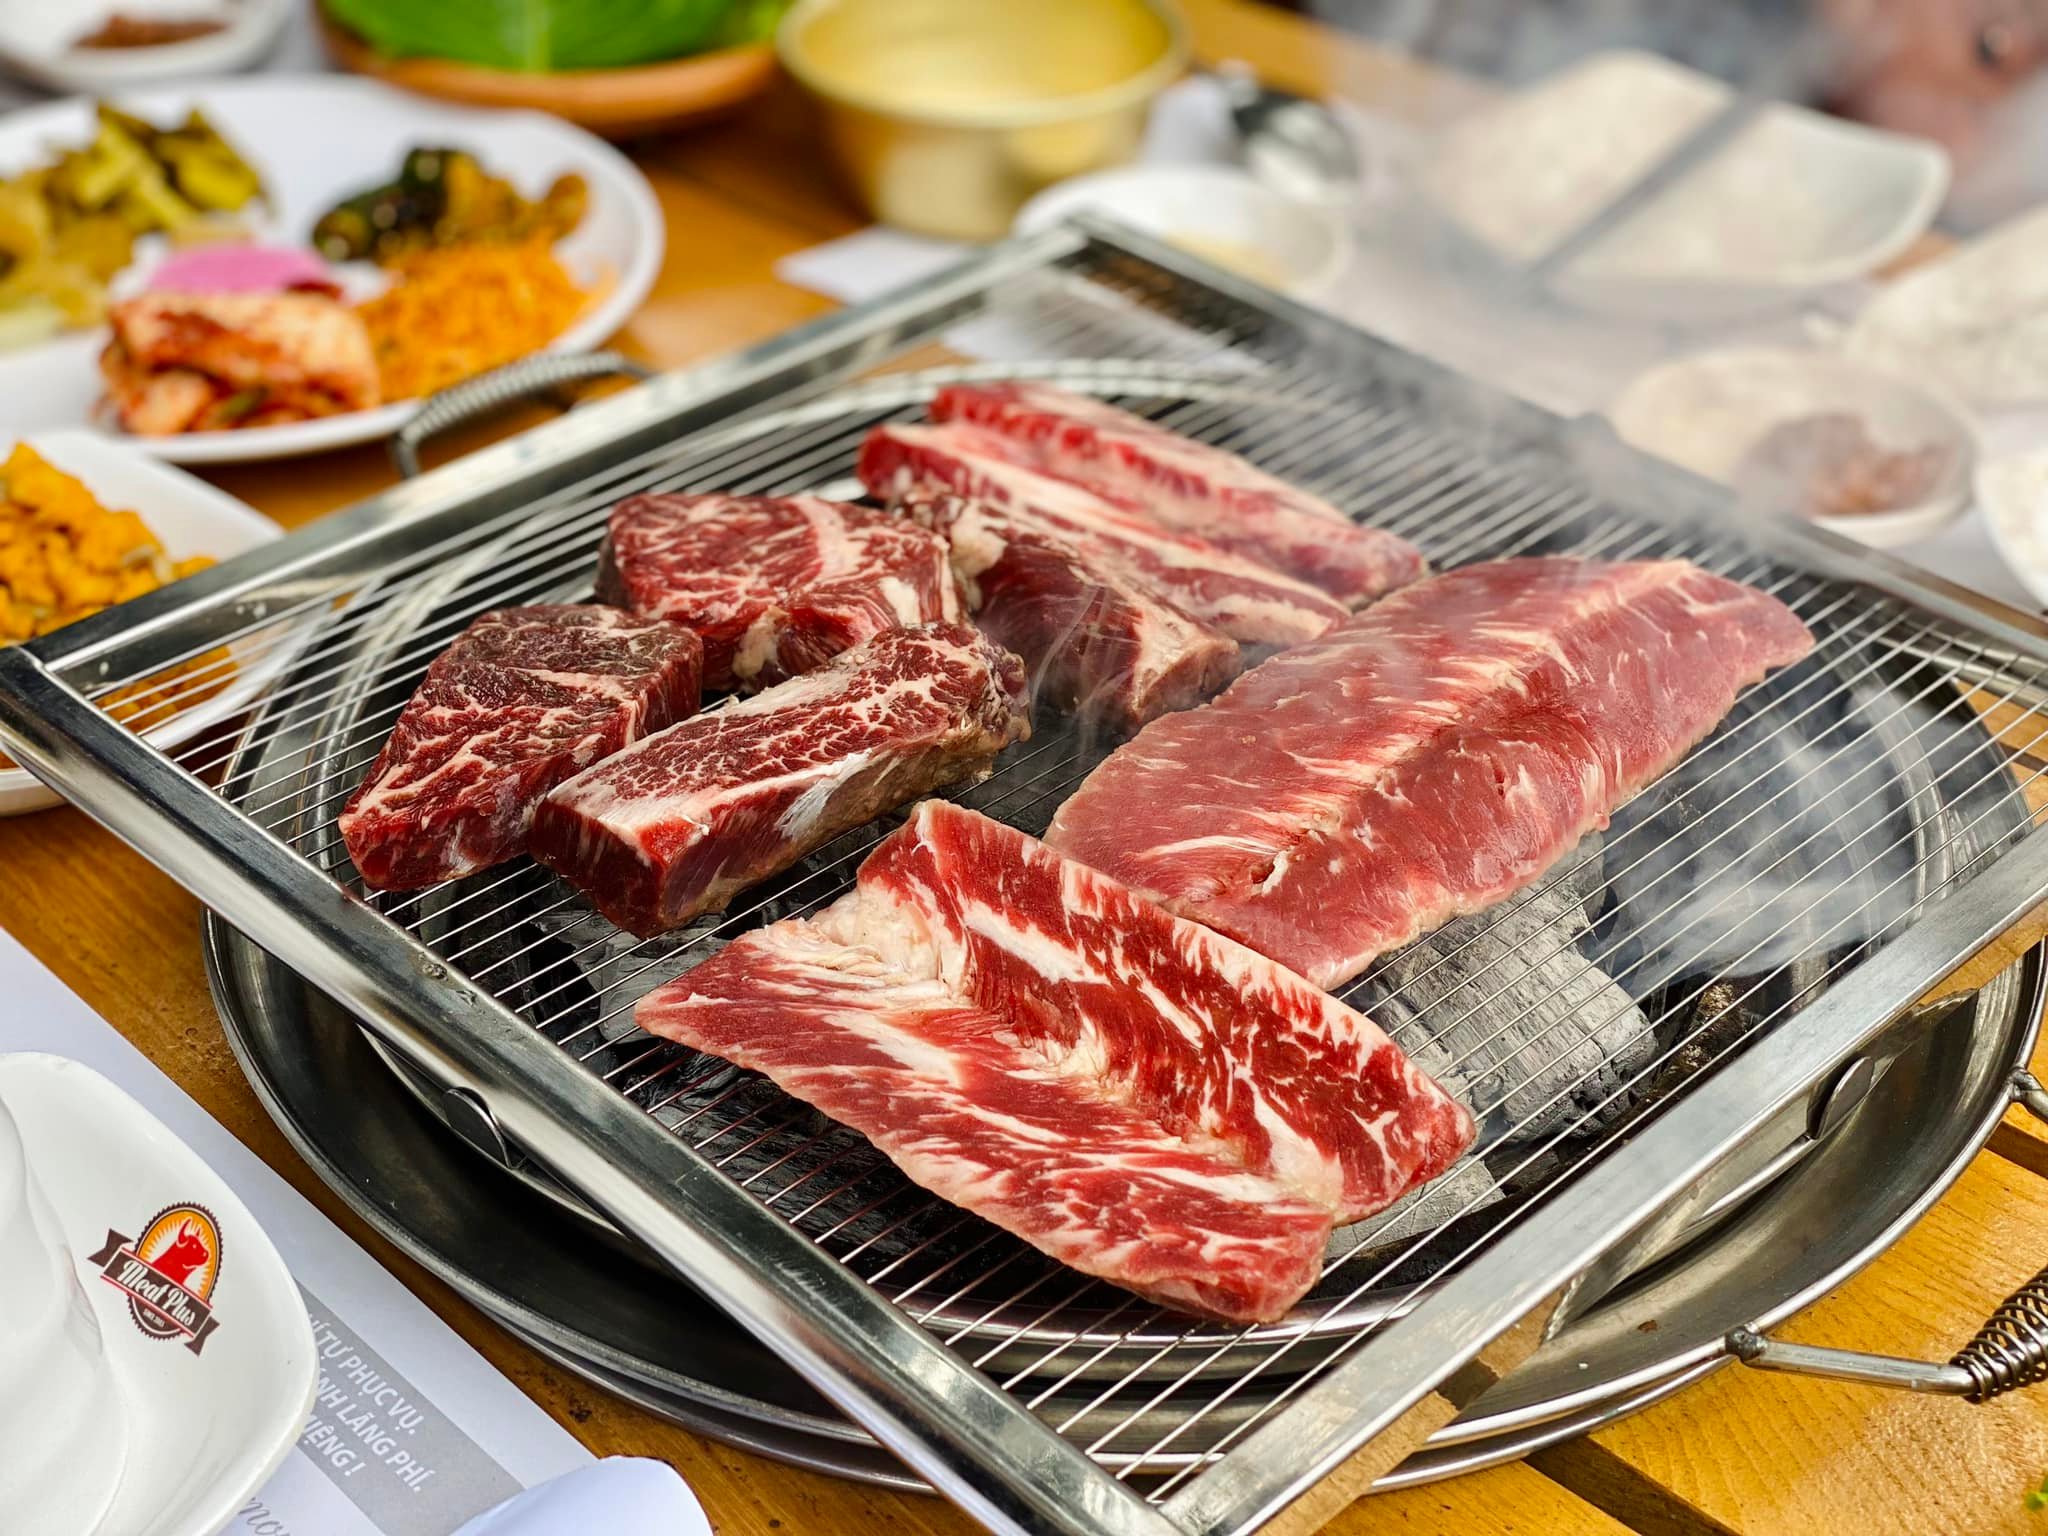 Thịt bò là thức ăn ít gây ngán, và khi thưởng thức theo kiểu Hàn thì chắc chắn sẽ khiến bất kỳ ai cũng phải gật gù về độ ngon của món ăn này